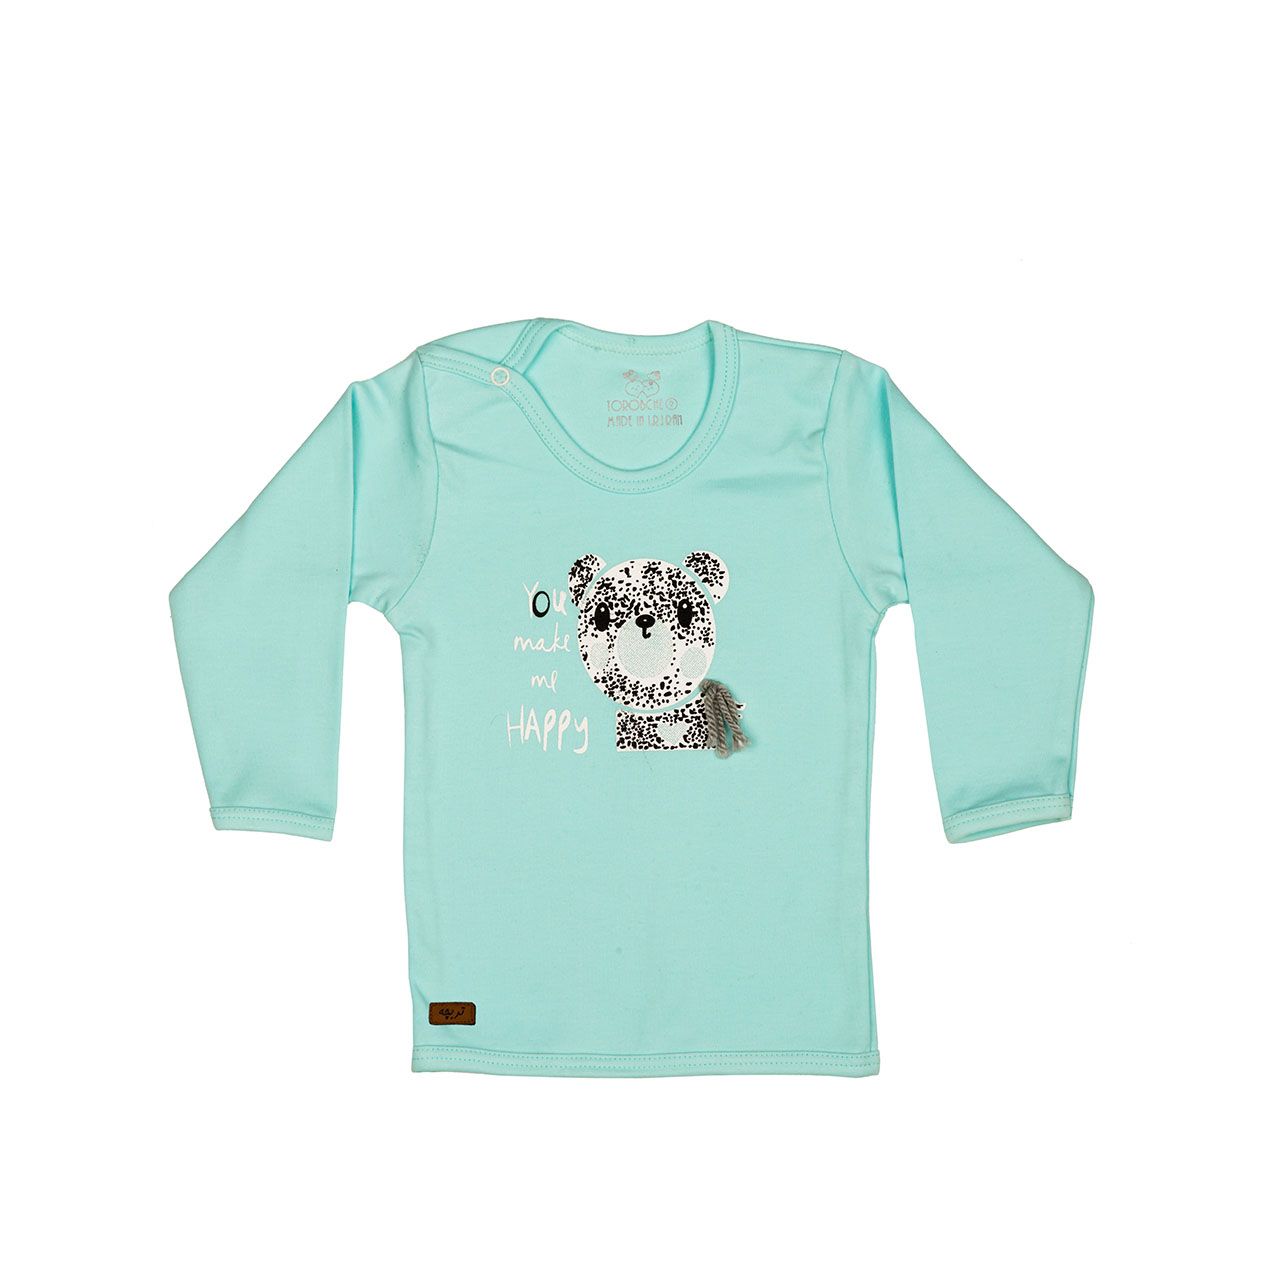 تی شرت آستین بلند نوزادی تربچه مدل خرس -  - 1